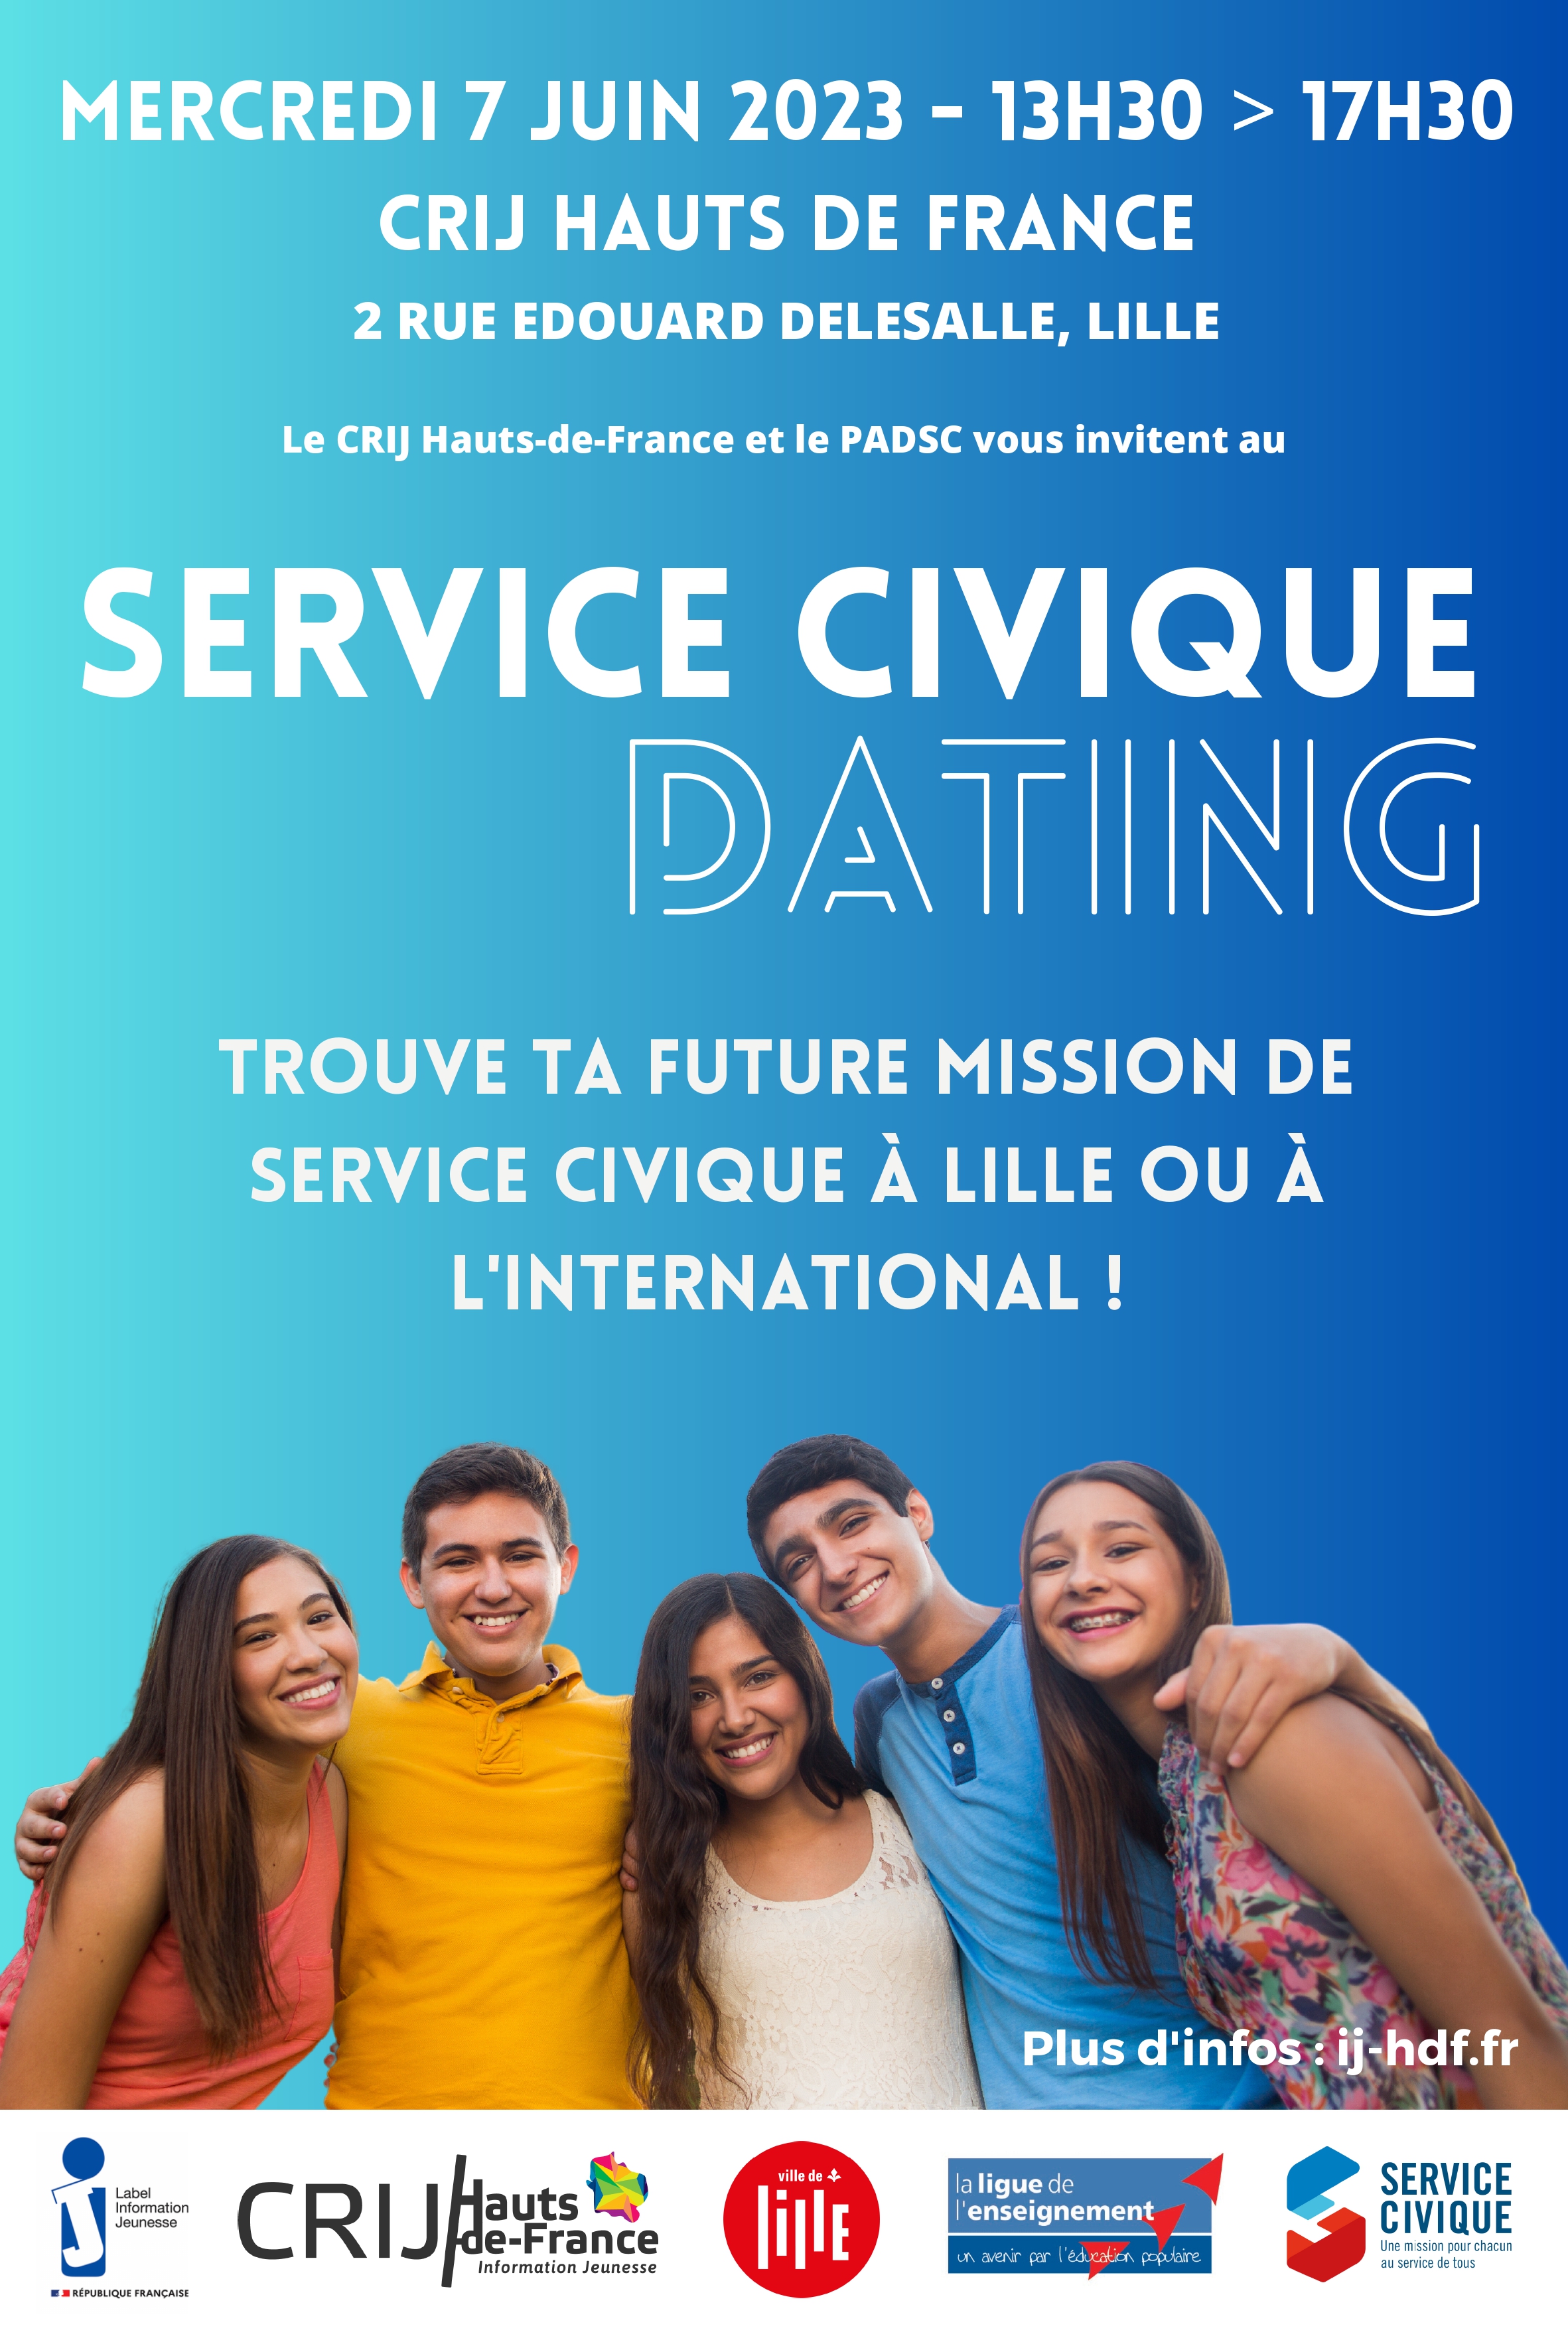 Service civique dating